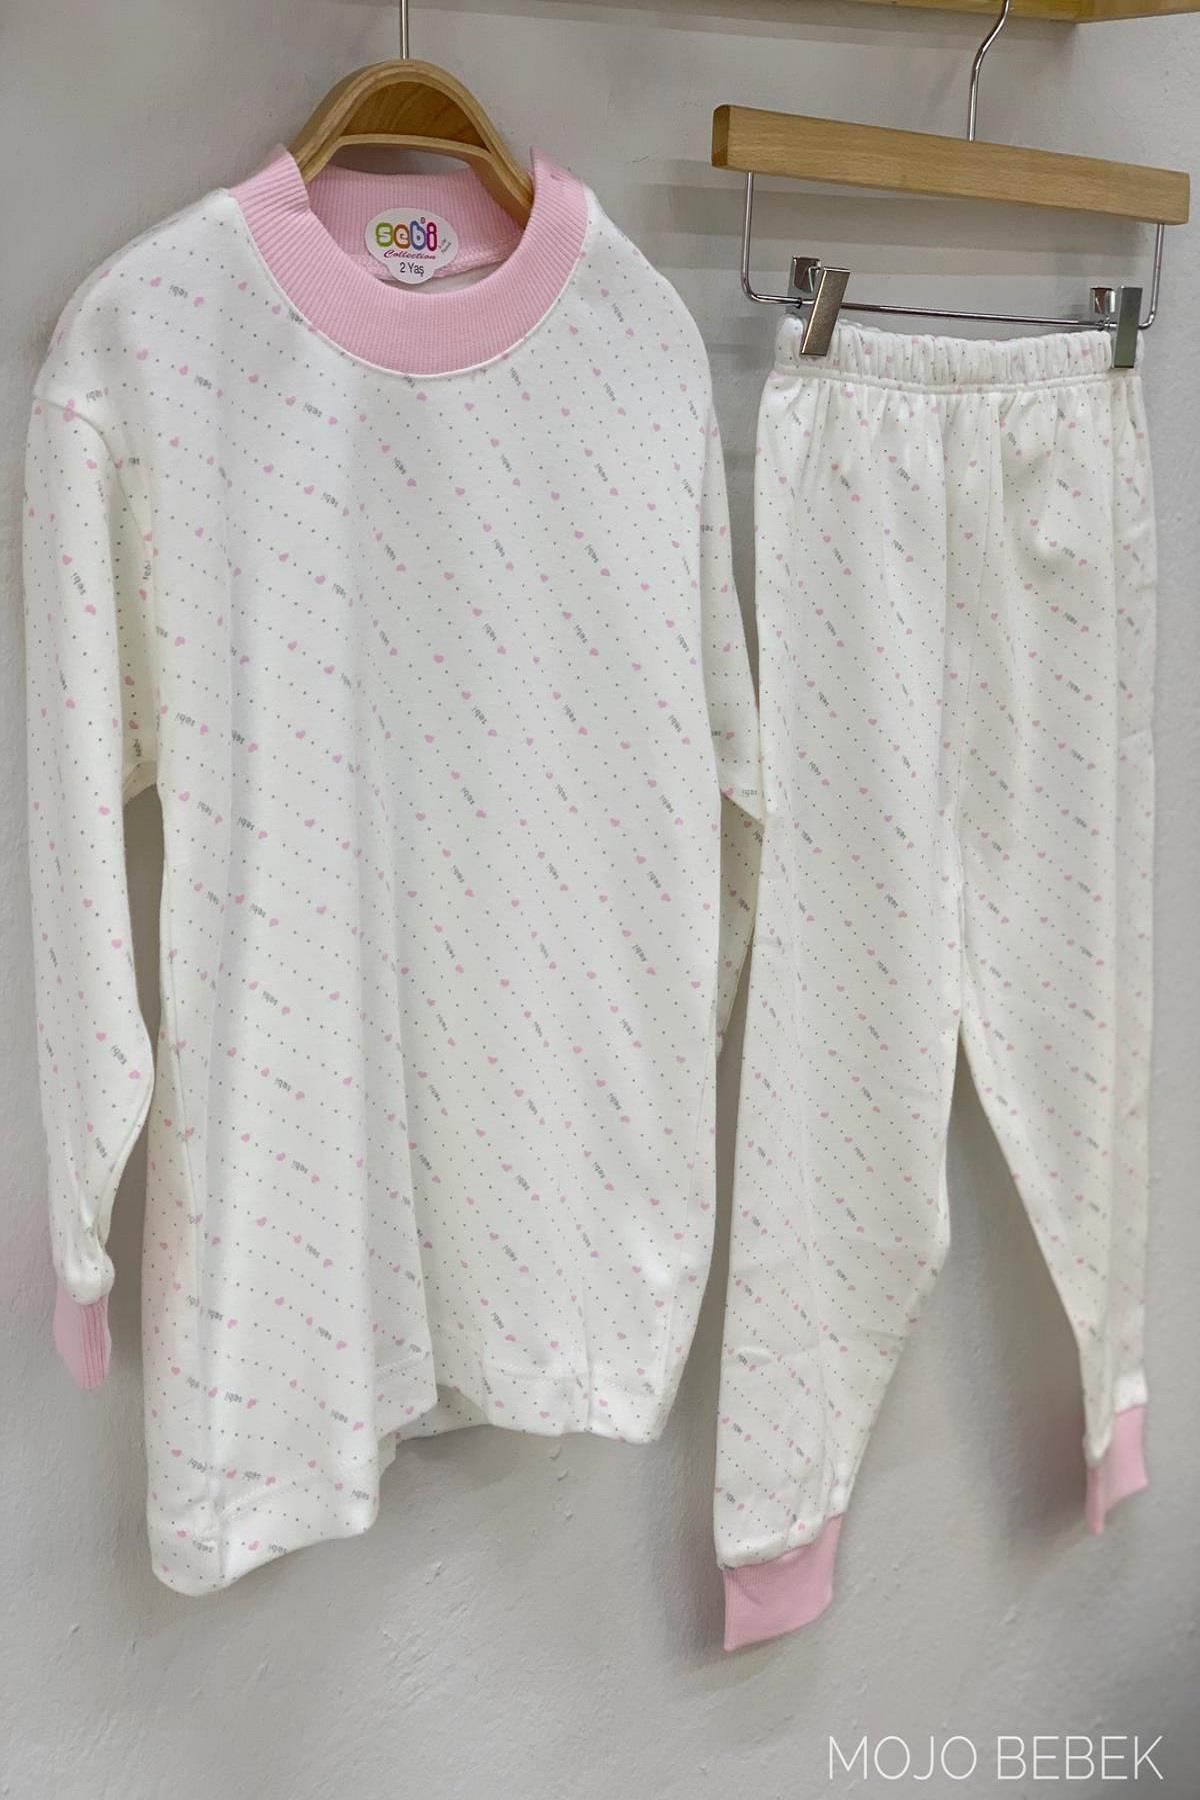 Sebi Bebe Kız Çocuk Kalpli Pijama Takımı 2115 Pembe